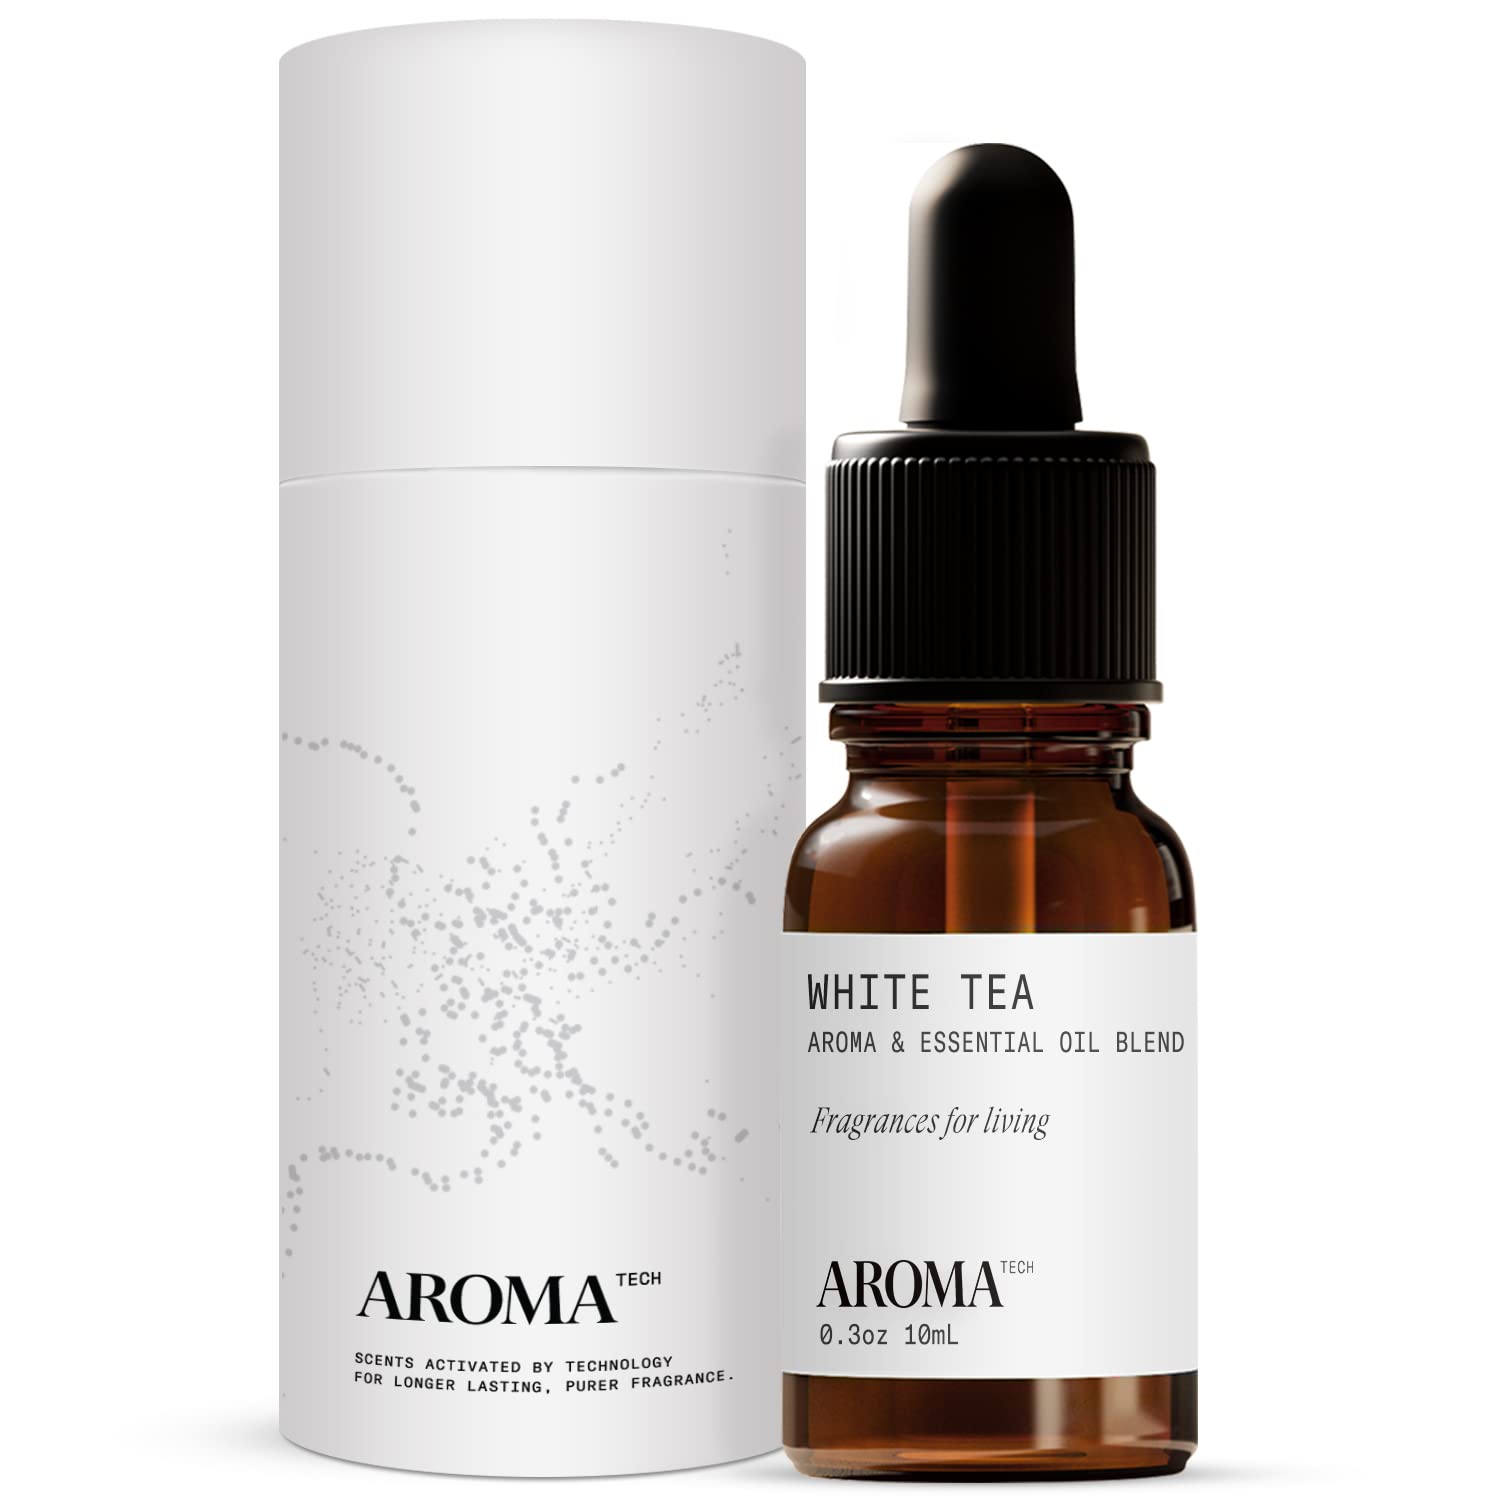 White Tea – AromaTech